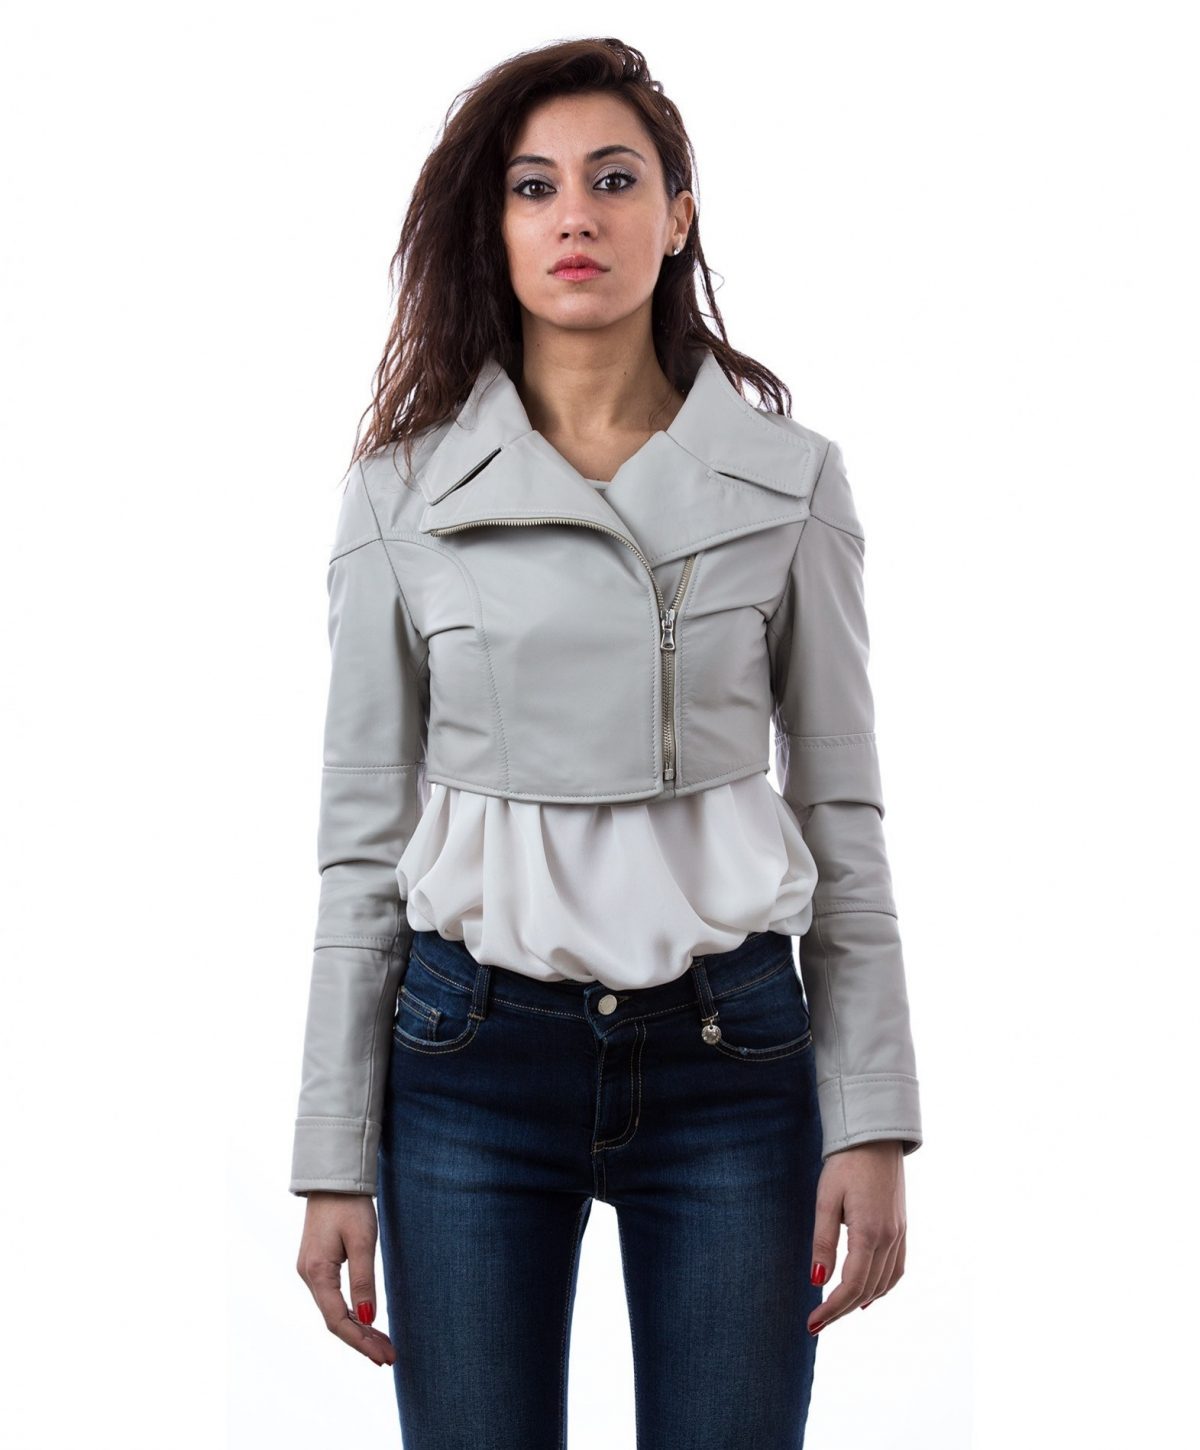 short-leather-jacket-lasered-on-back-ice-color-bolero-